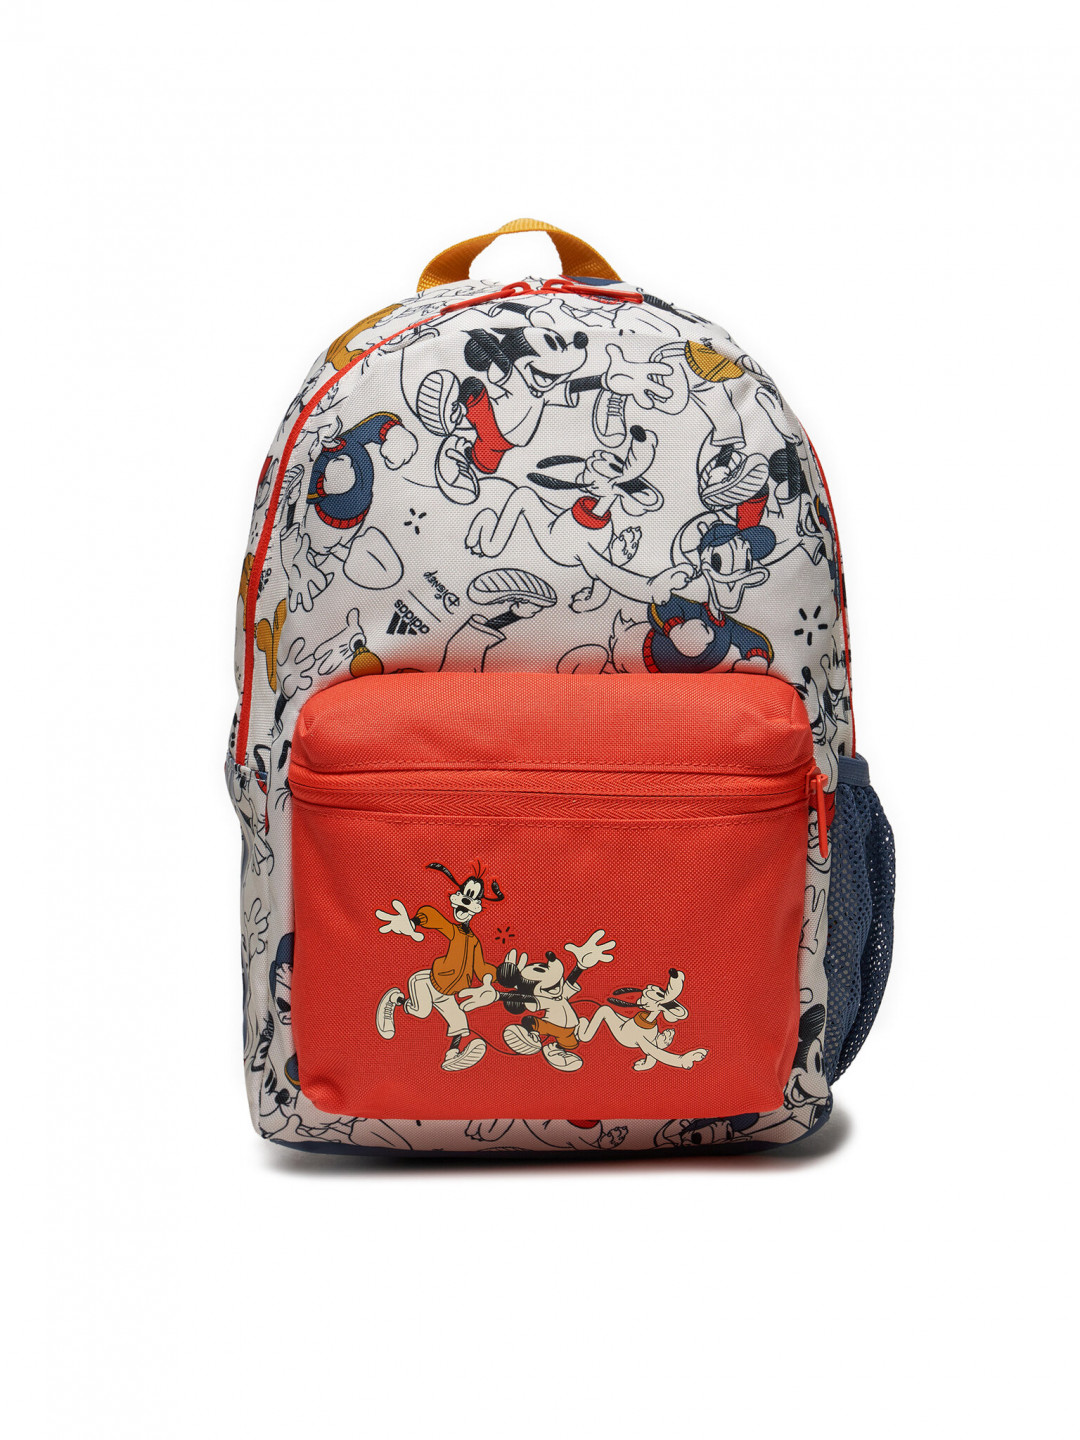 Adidas Batoh Disney s Mickey Mouse Backpack IU4861 Bílá